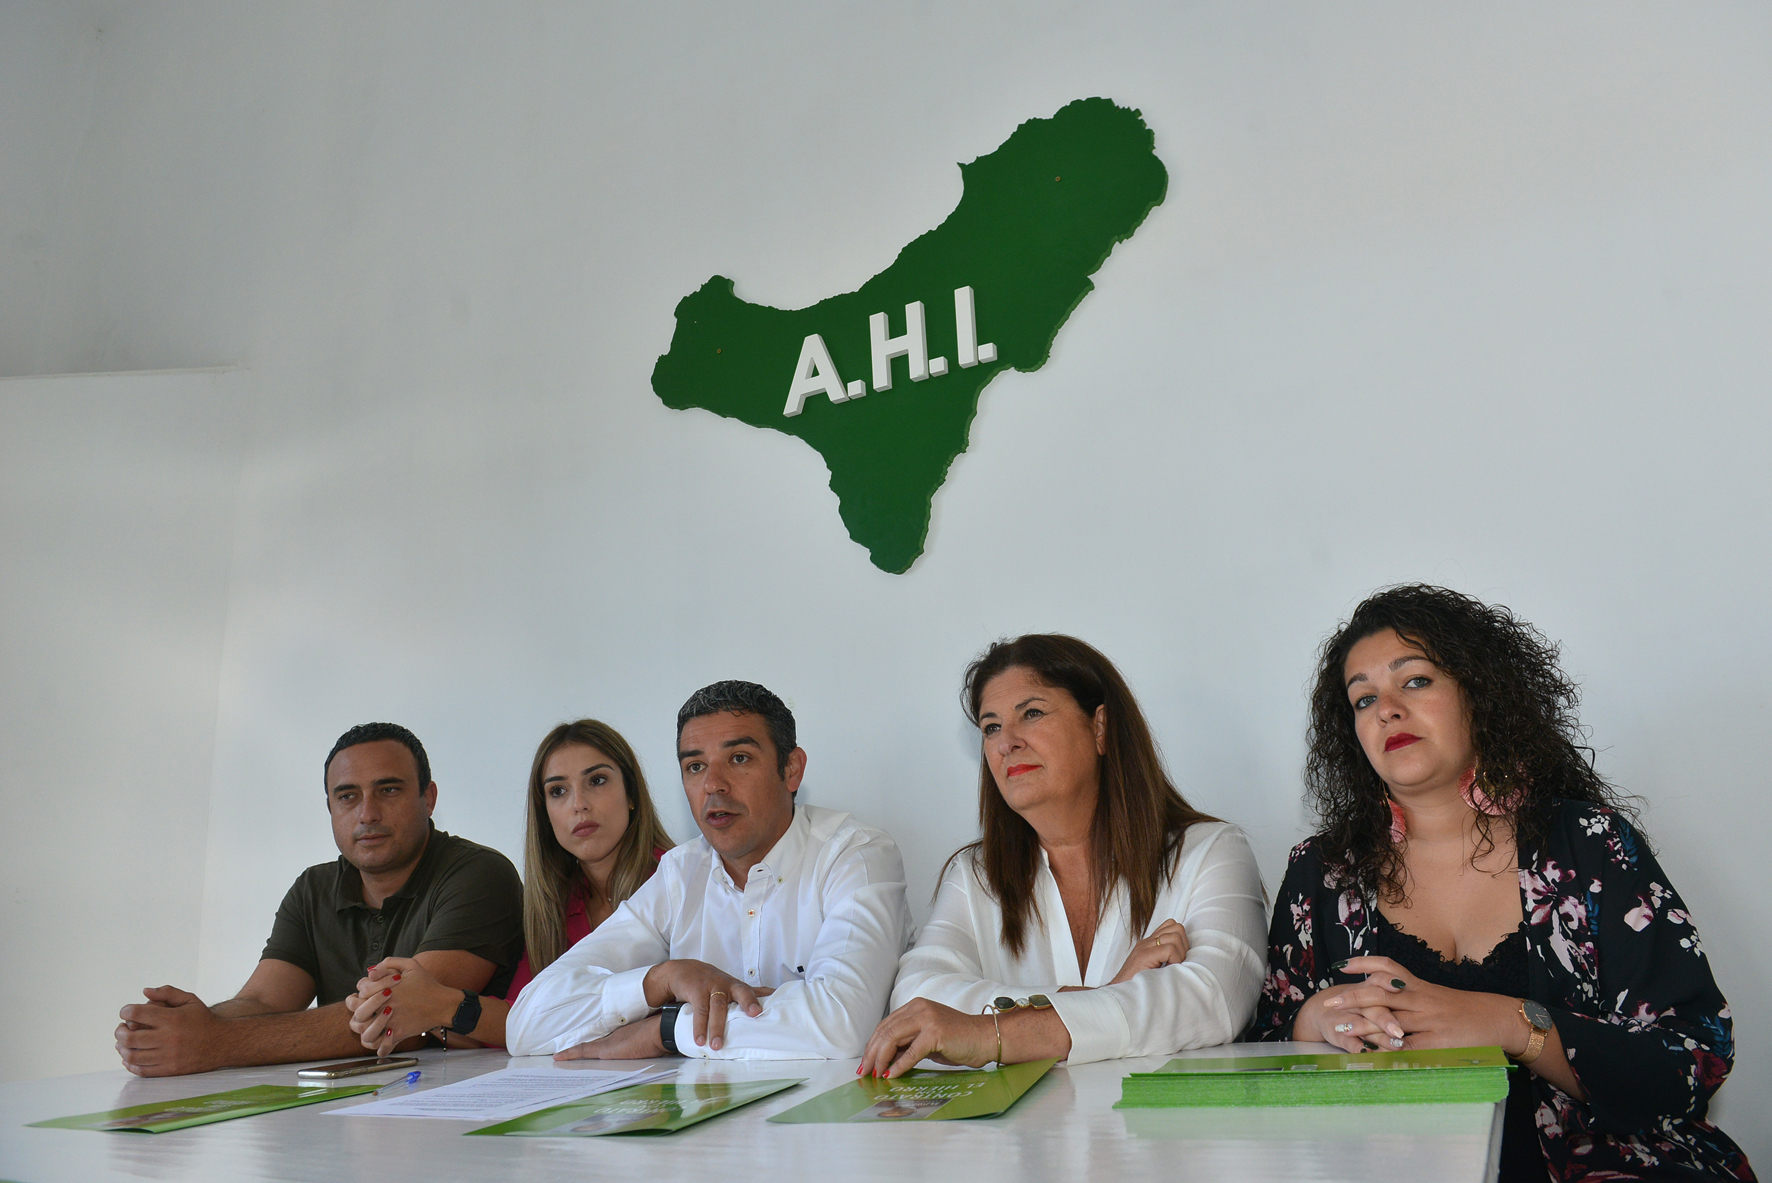 AHI abre expediente disciplinario a los miembros de su formación que actualmente integran la Agrupación de Electores por El Hierro